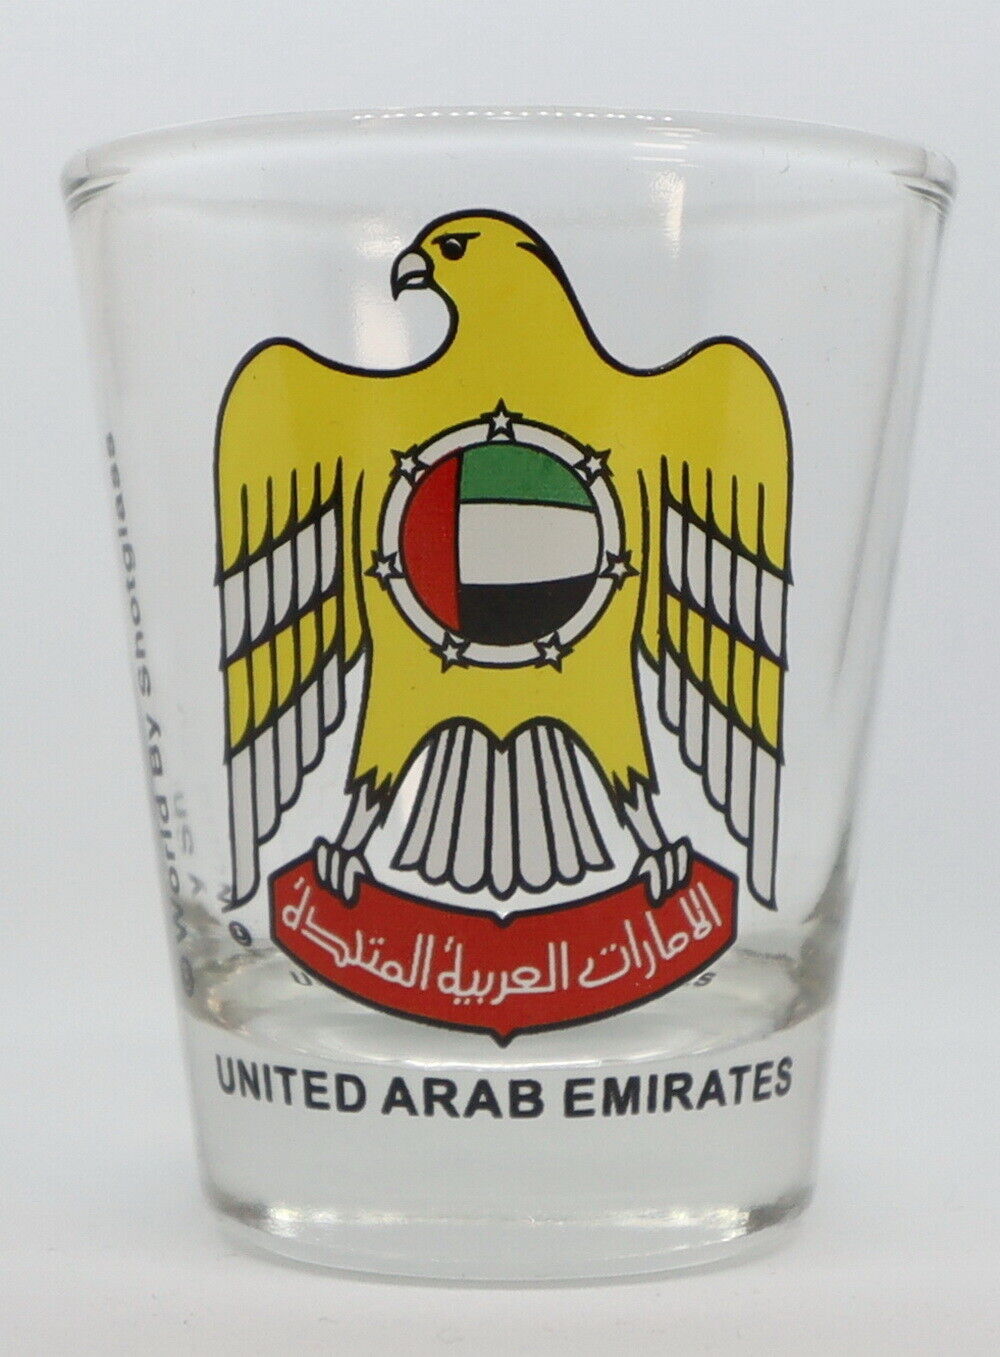 UNITED ARAB EMIRATES (UAE) COAT OF ARMS SHOT GLASS SHOTGLASS